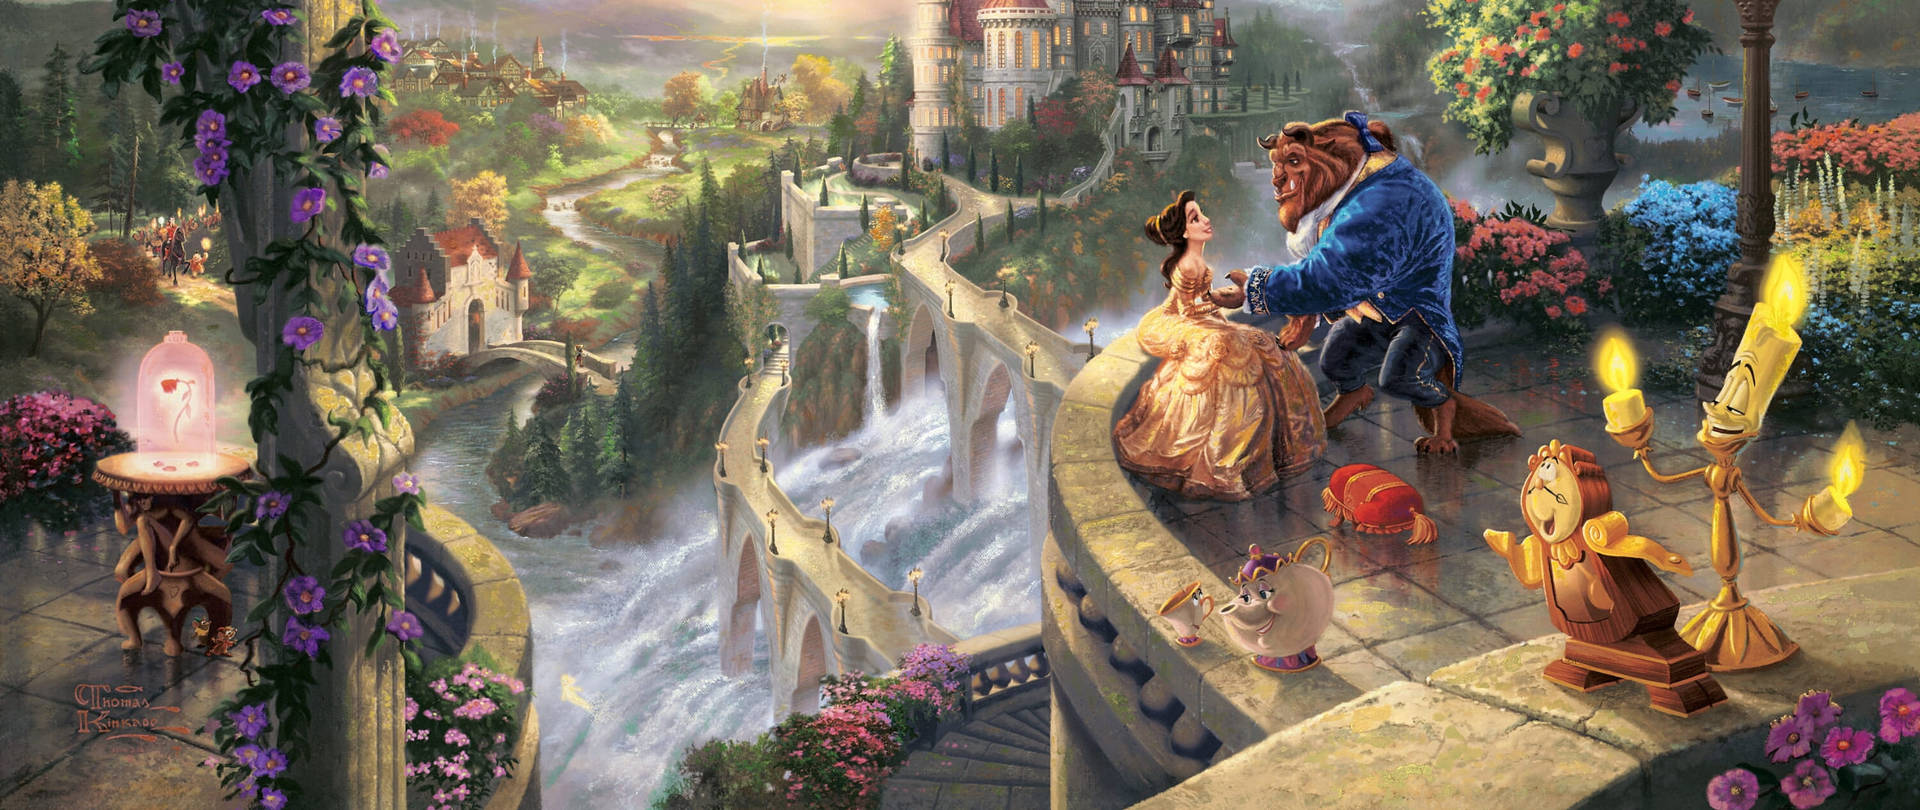 Belle In Disney Castle